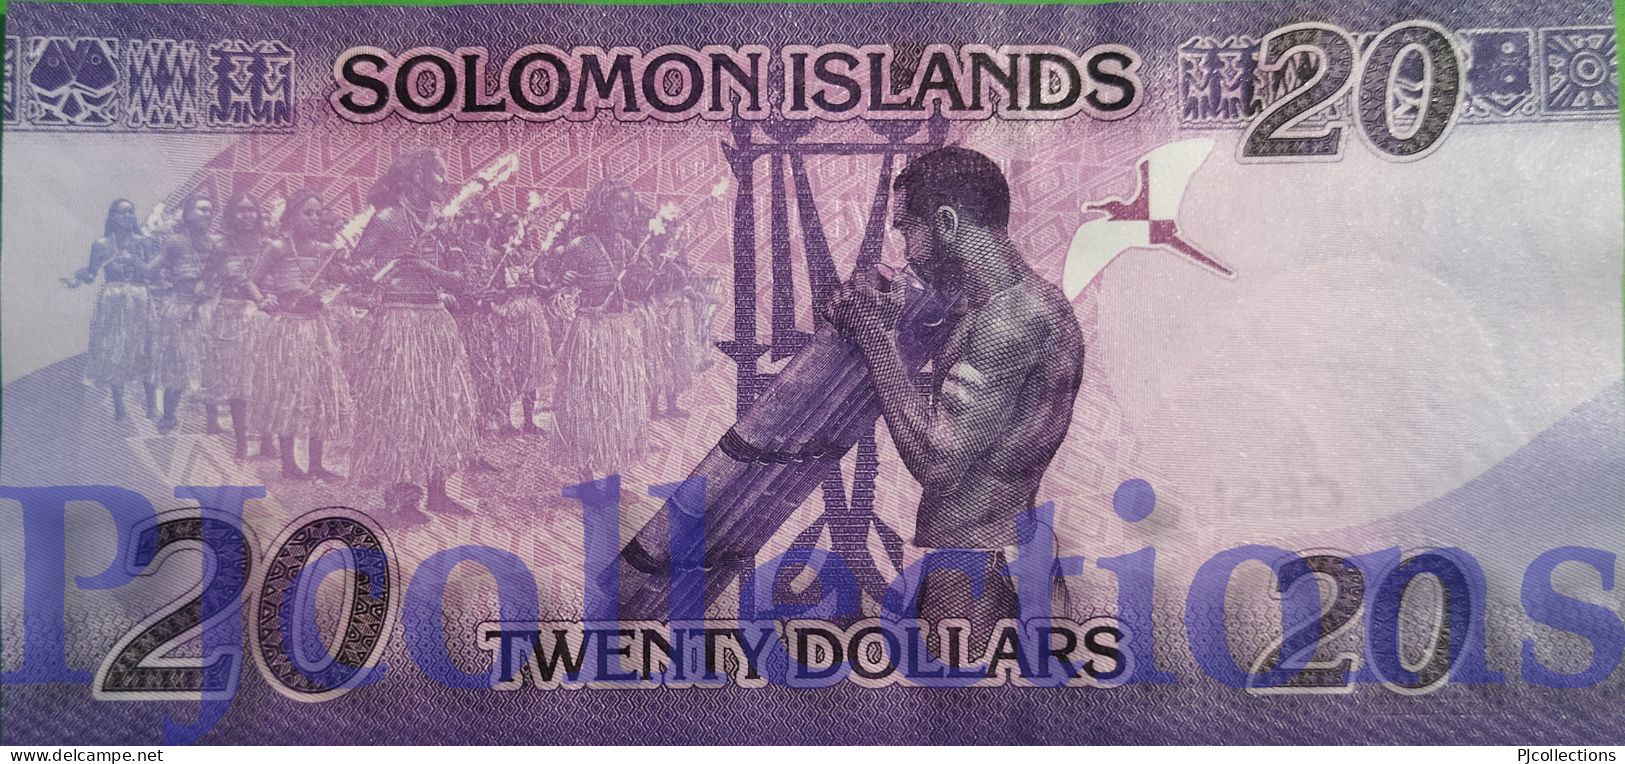 SOLOMON ISLANDS 20 DOLLARS 2017 PICK 34 UNC LOW SERIAL NUMBER "A/1 000766" - Solomonen